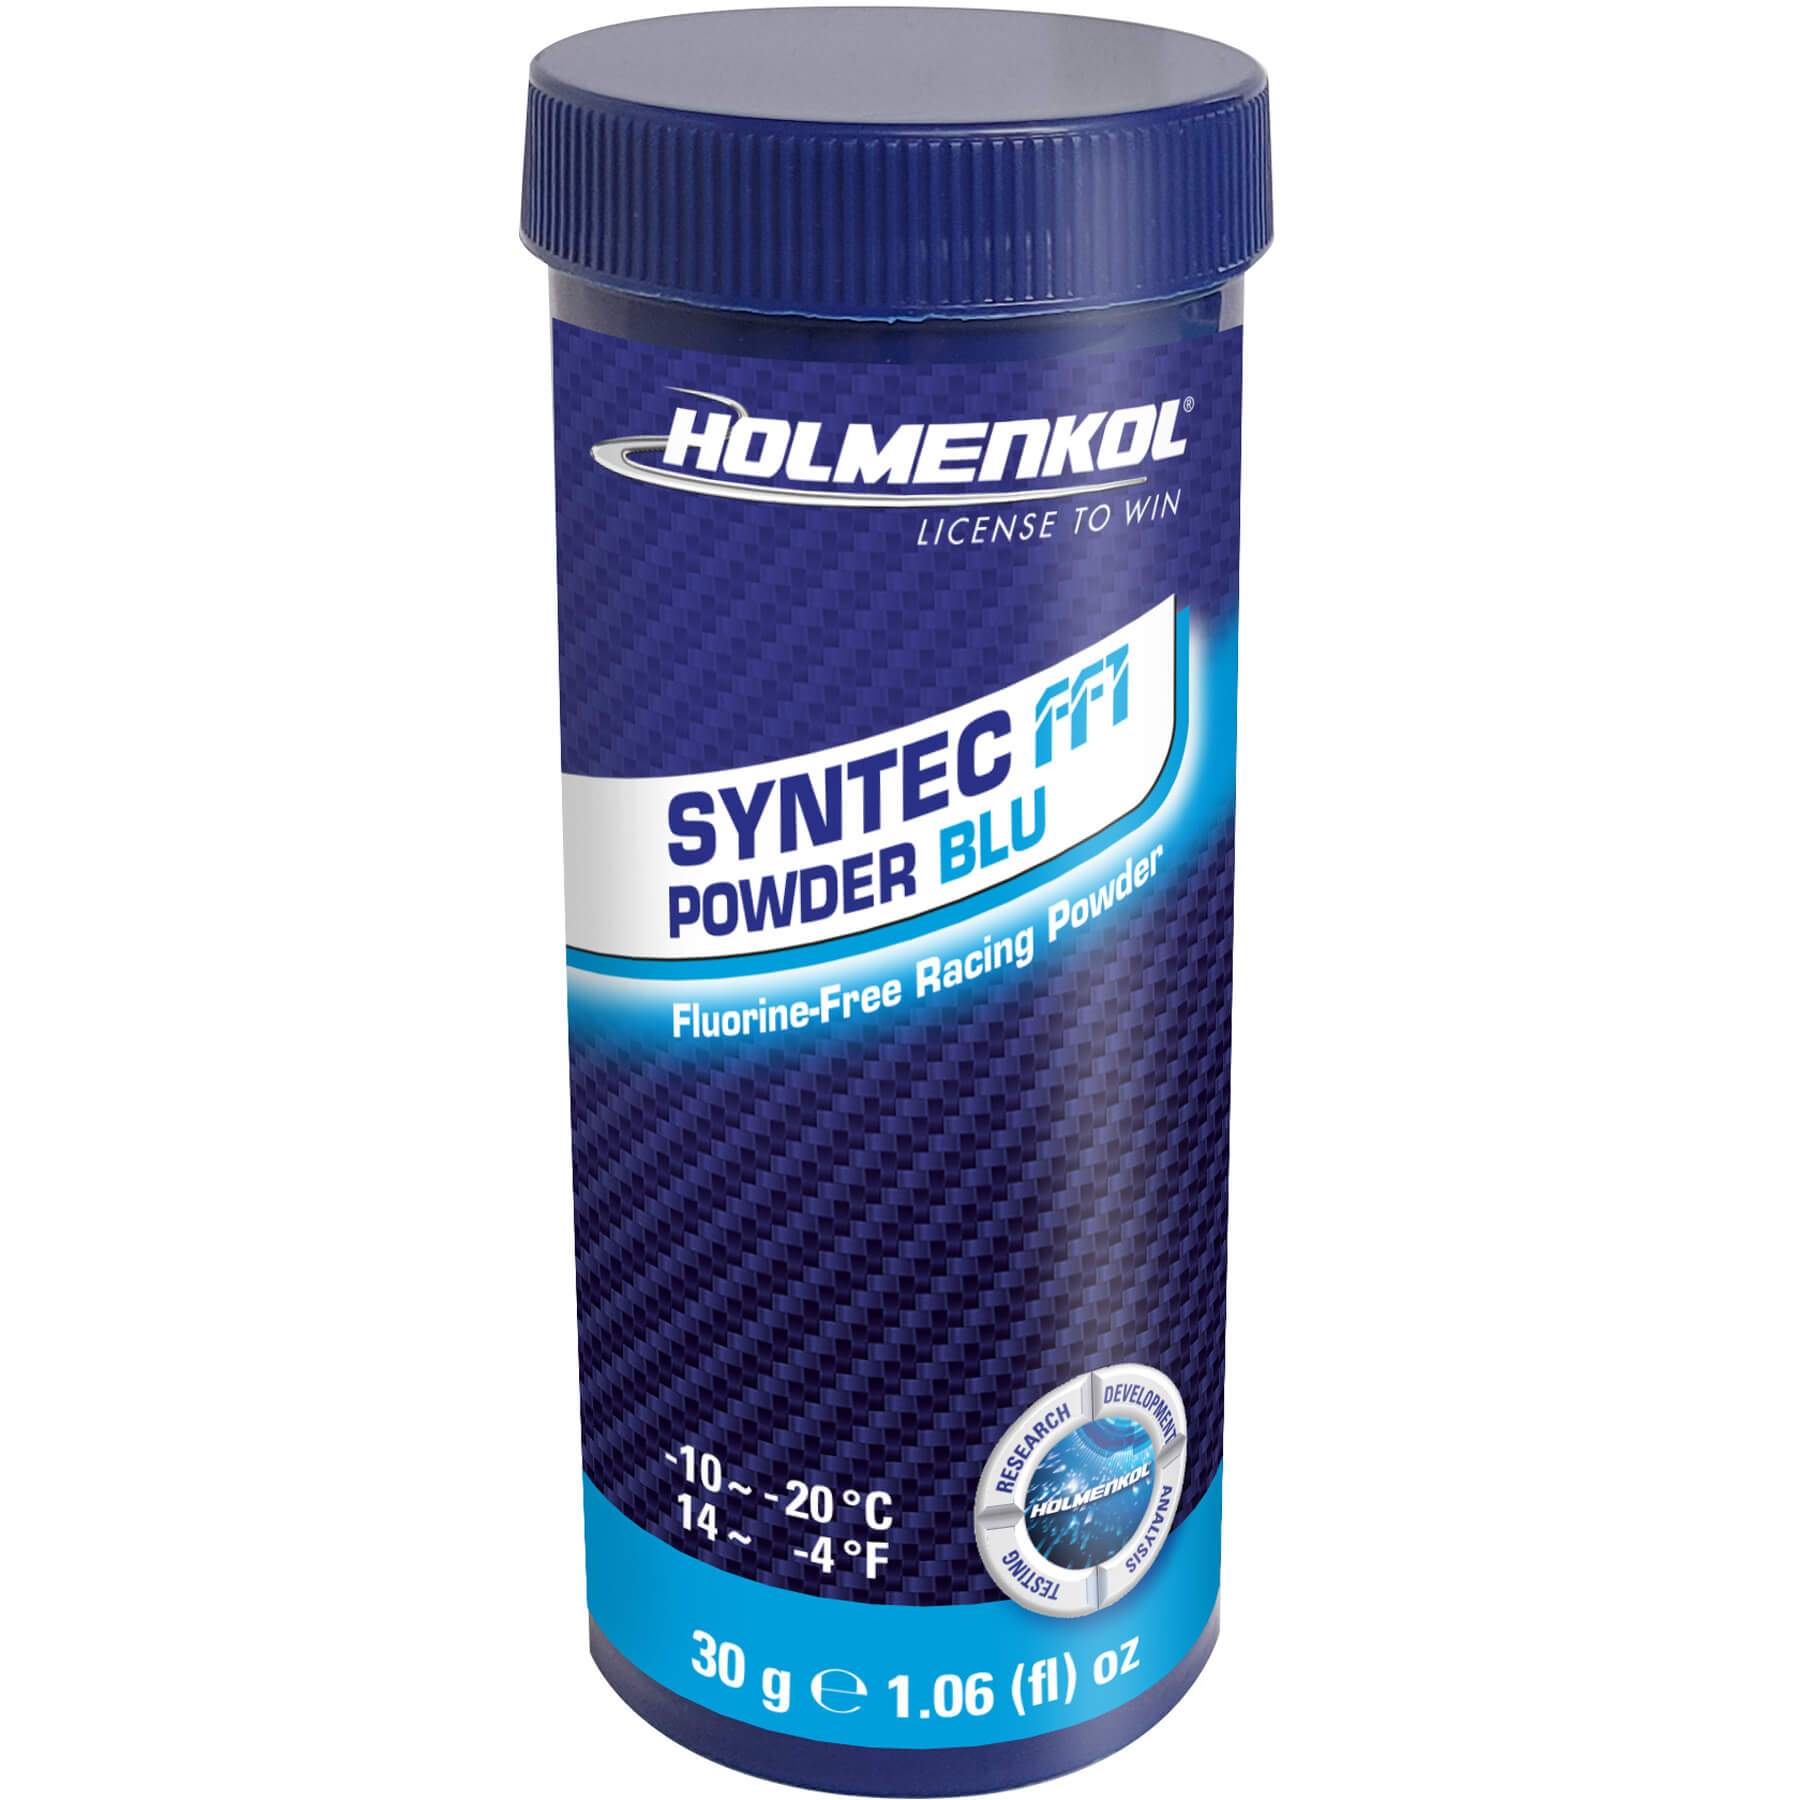 Holmenkol Syntec FF1 Powder 30g - 0